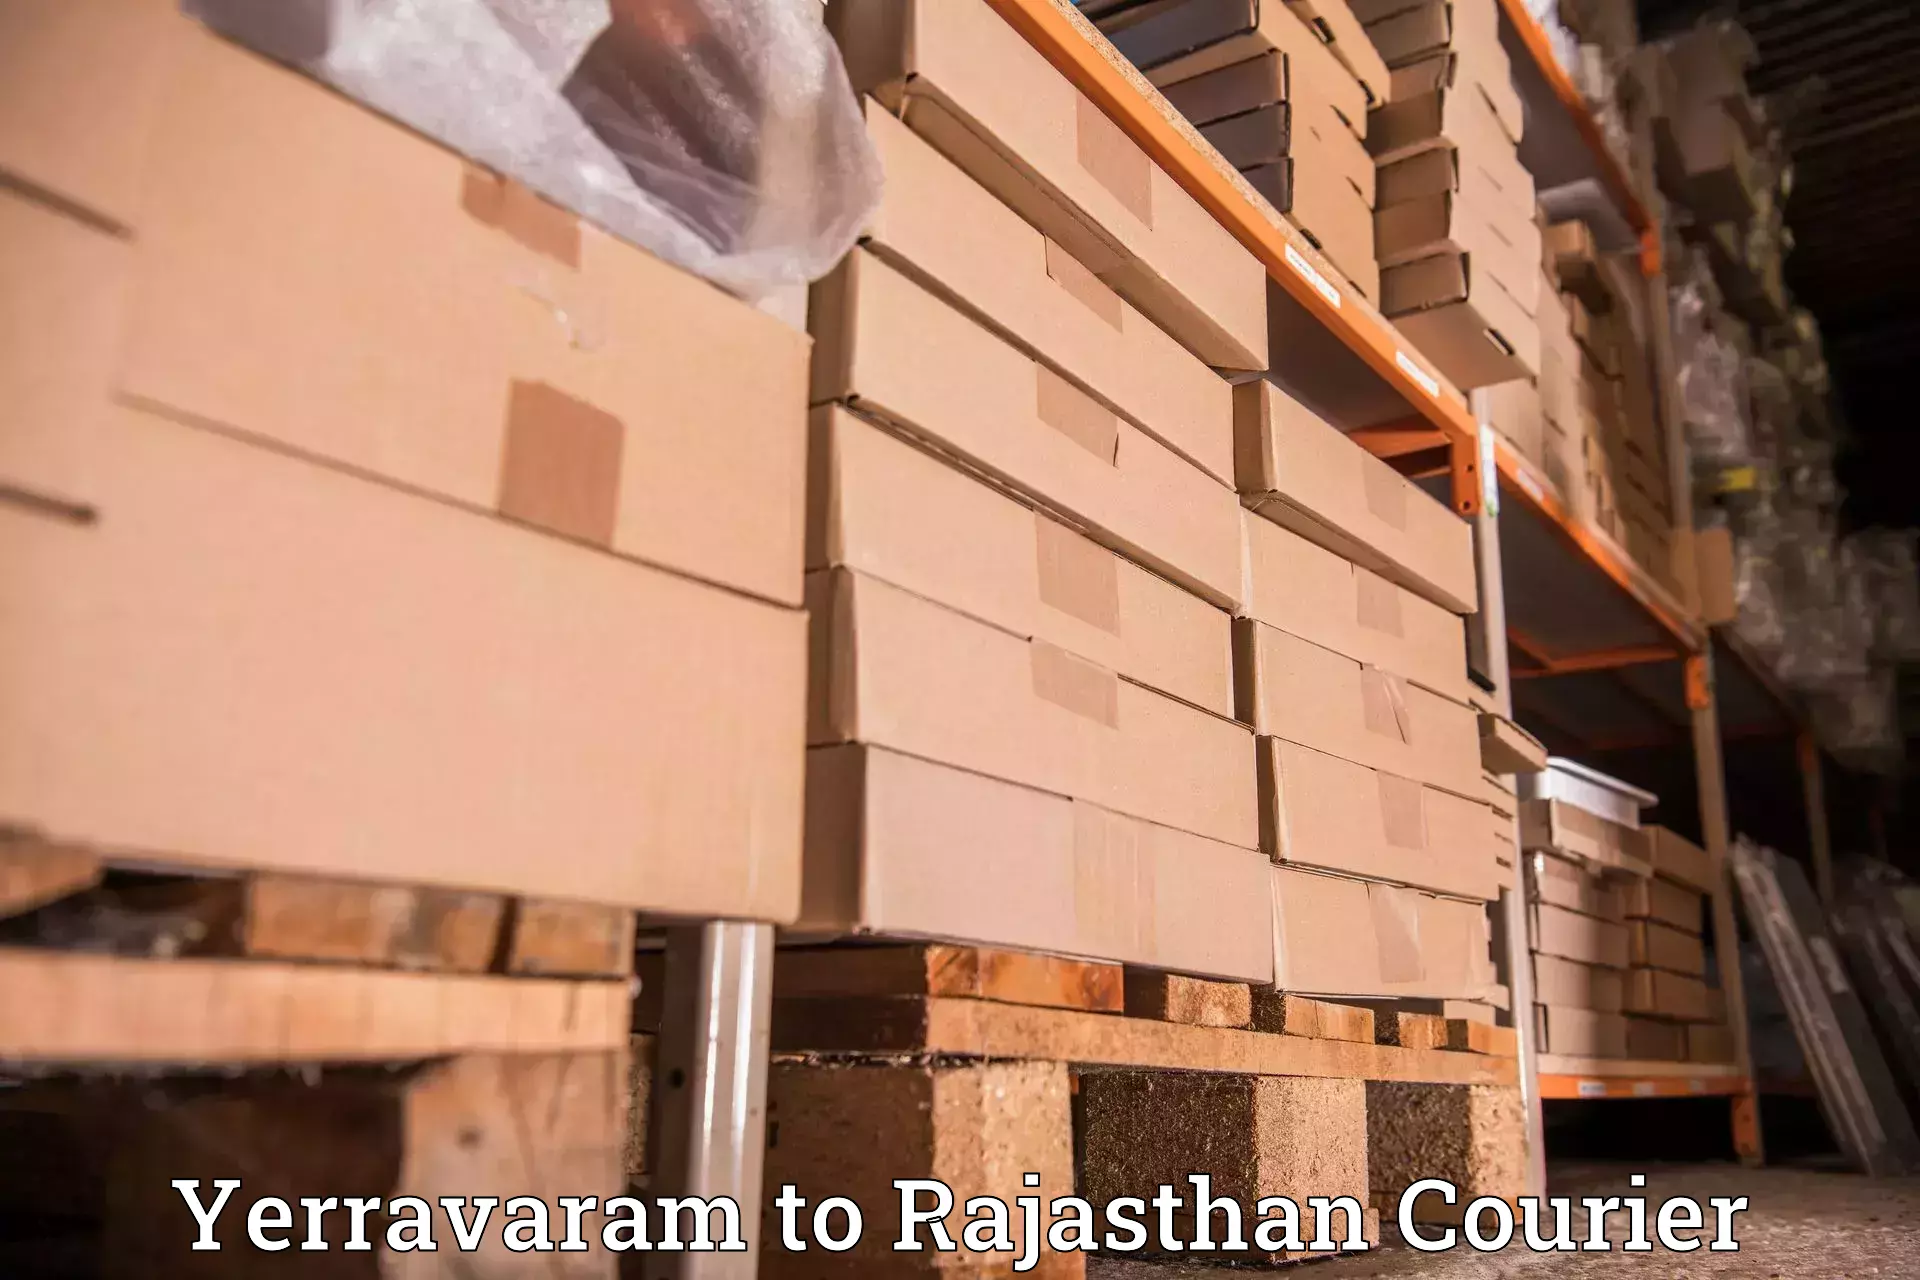 Corporate courier solutions Yerravaram to Udaipurwati